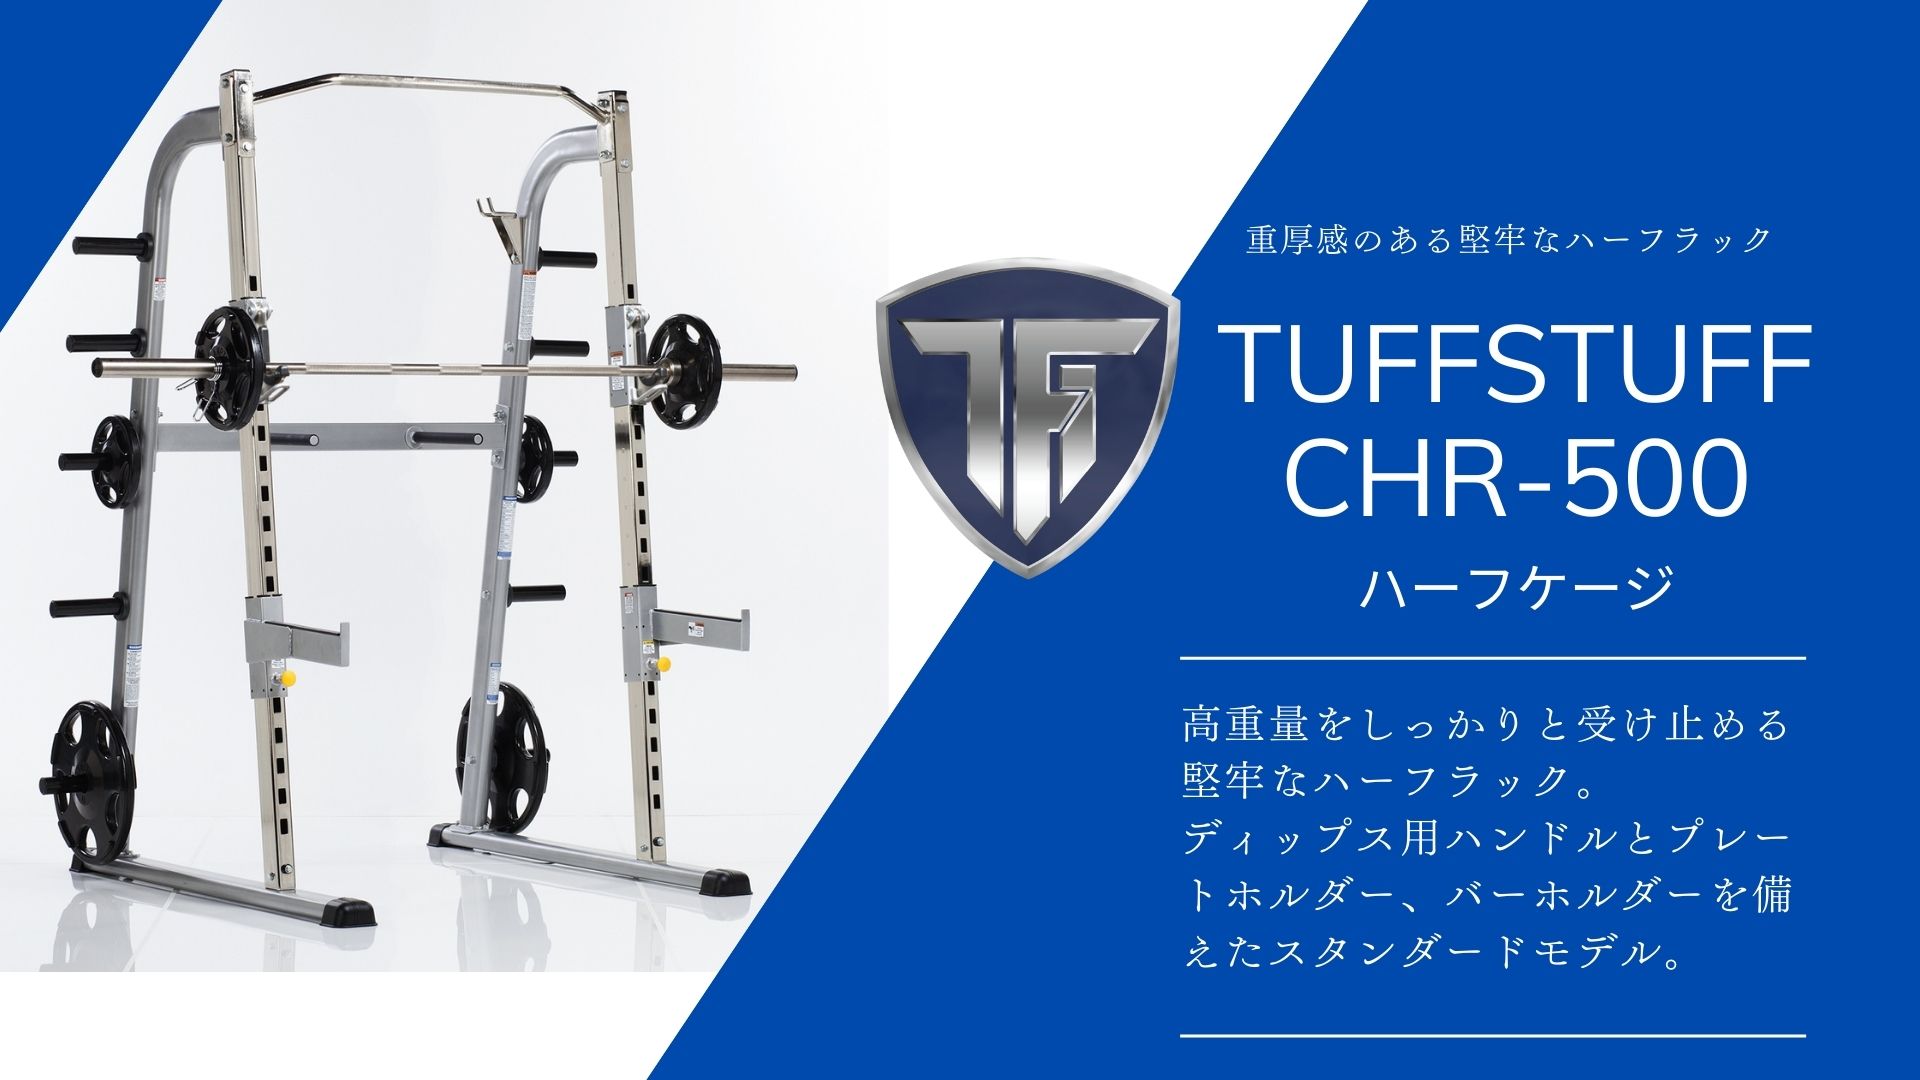 TUFFSTUFF CHR-500 ハーフケージ トップイメージ